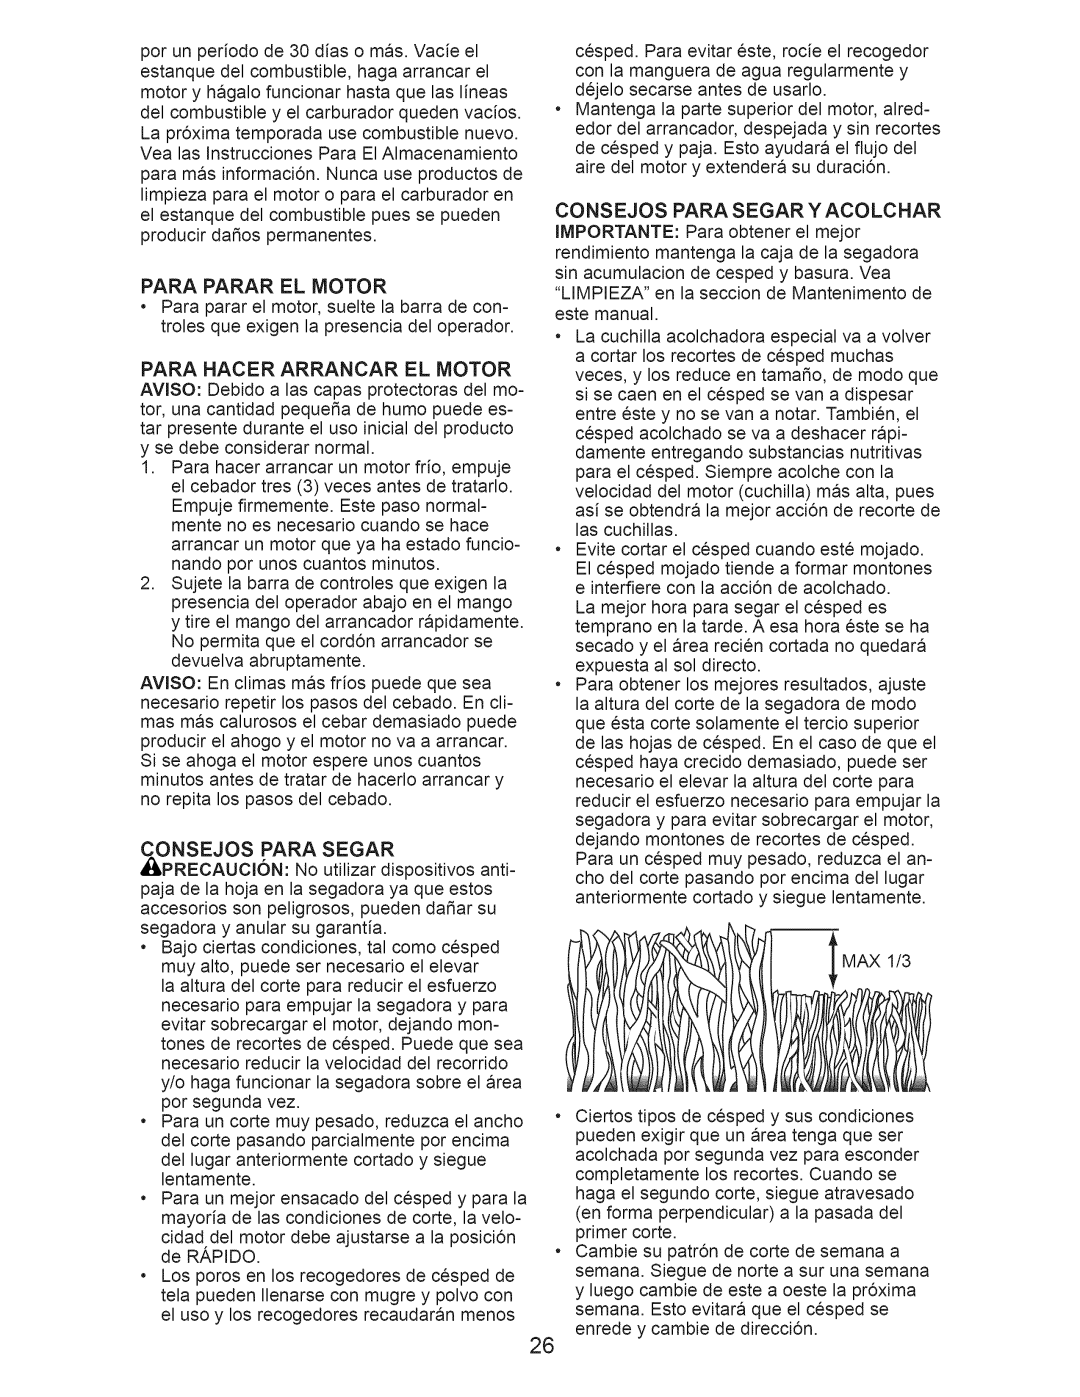 Craftsman 917.389010 manual Para Parar El Motor, Para Hacer Arrancar El Motor, Onsejos Para Segar 